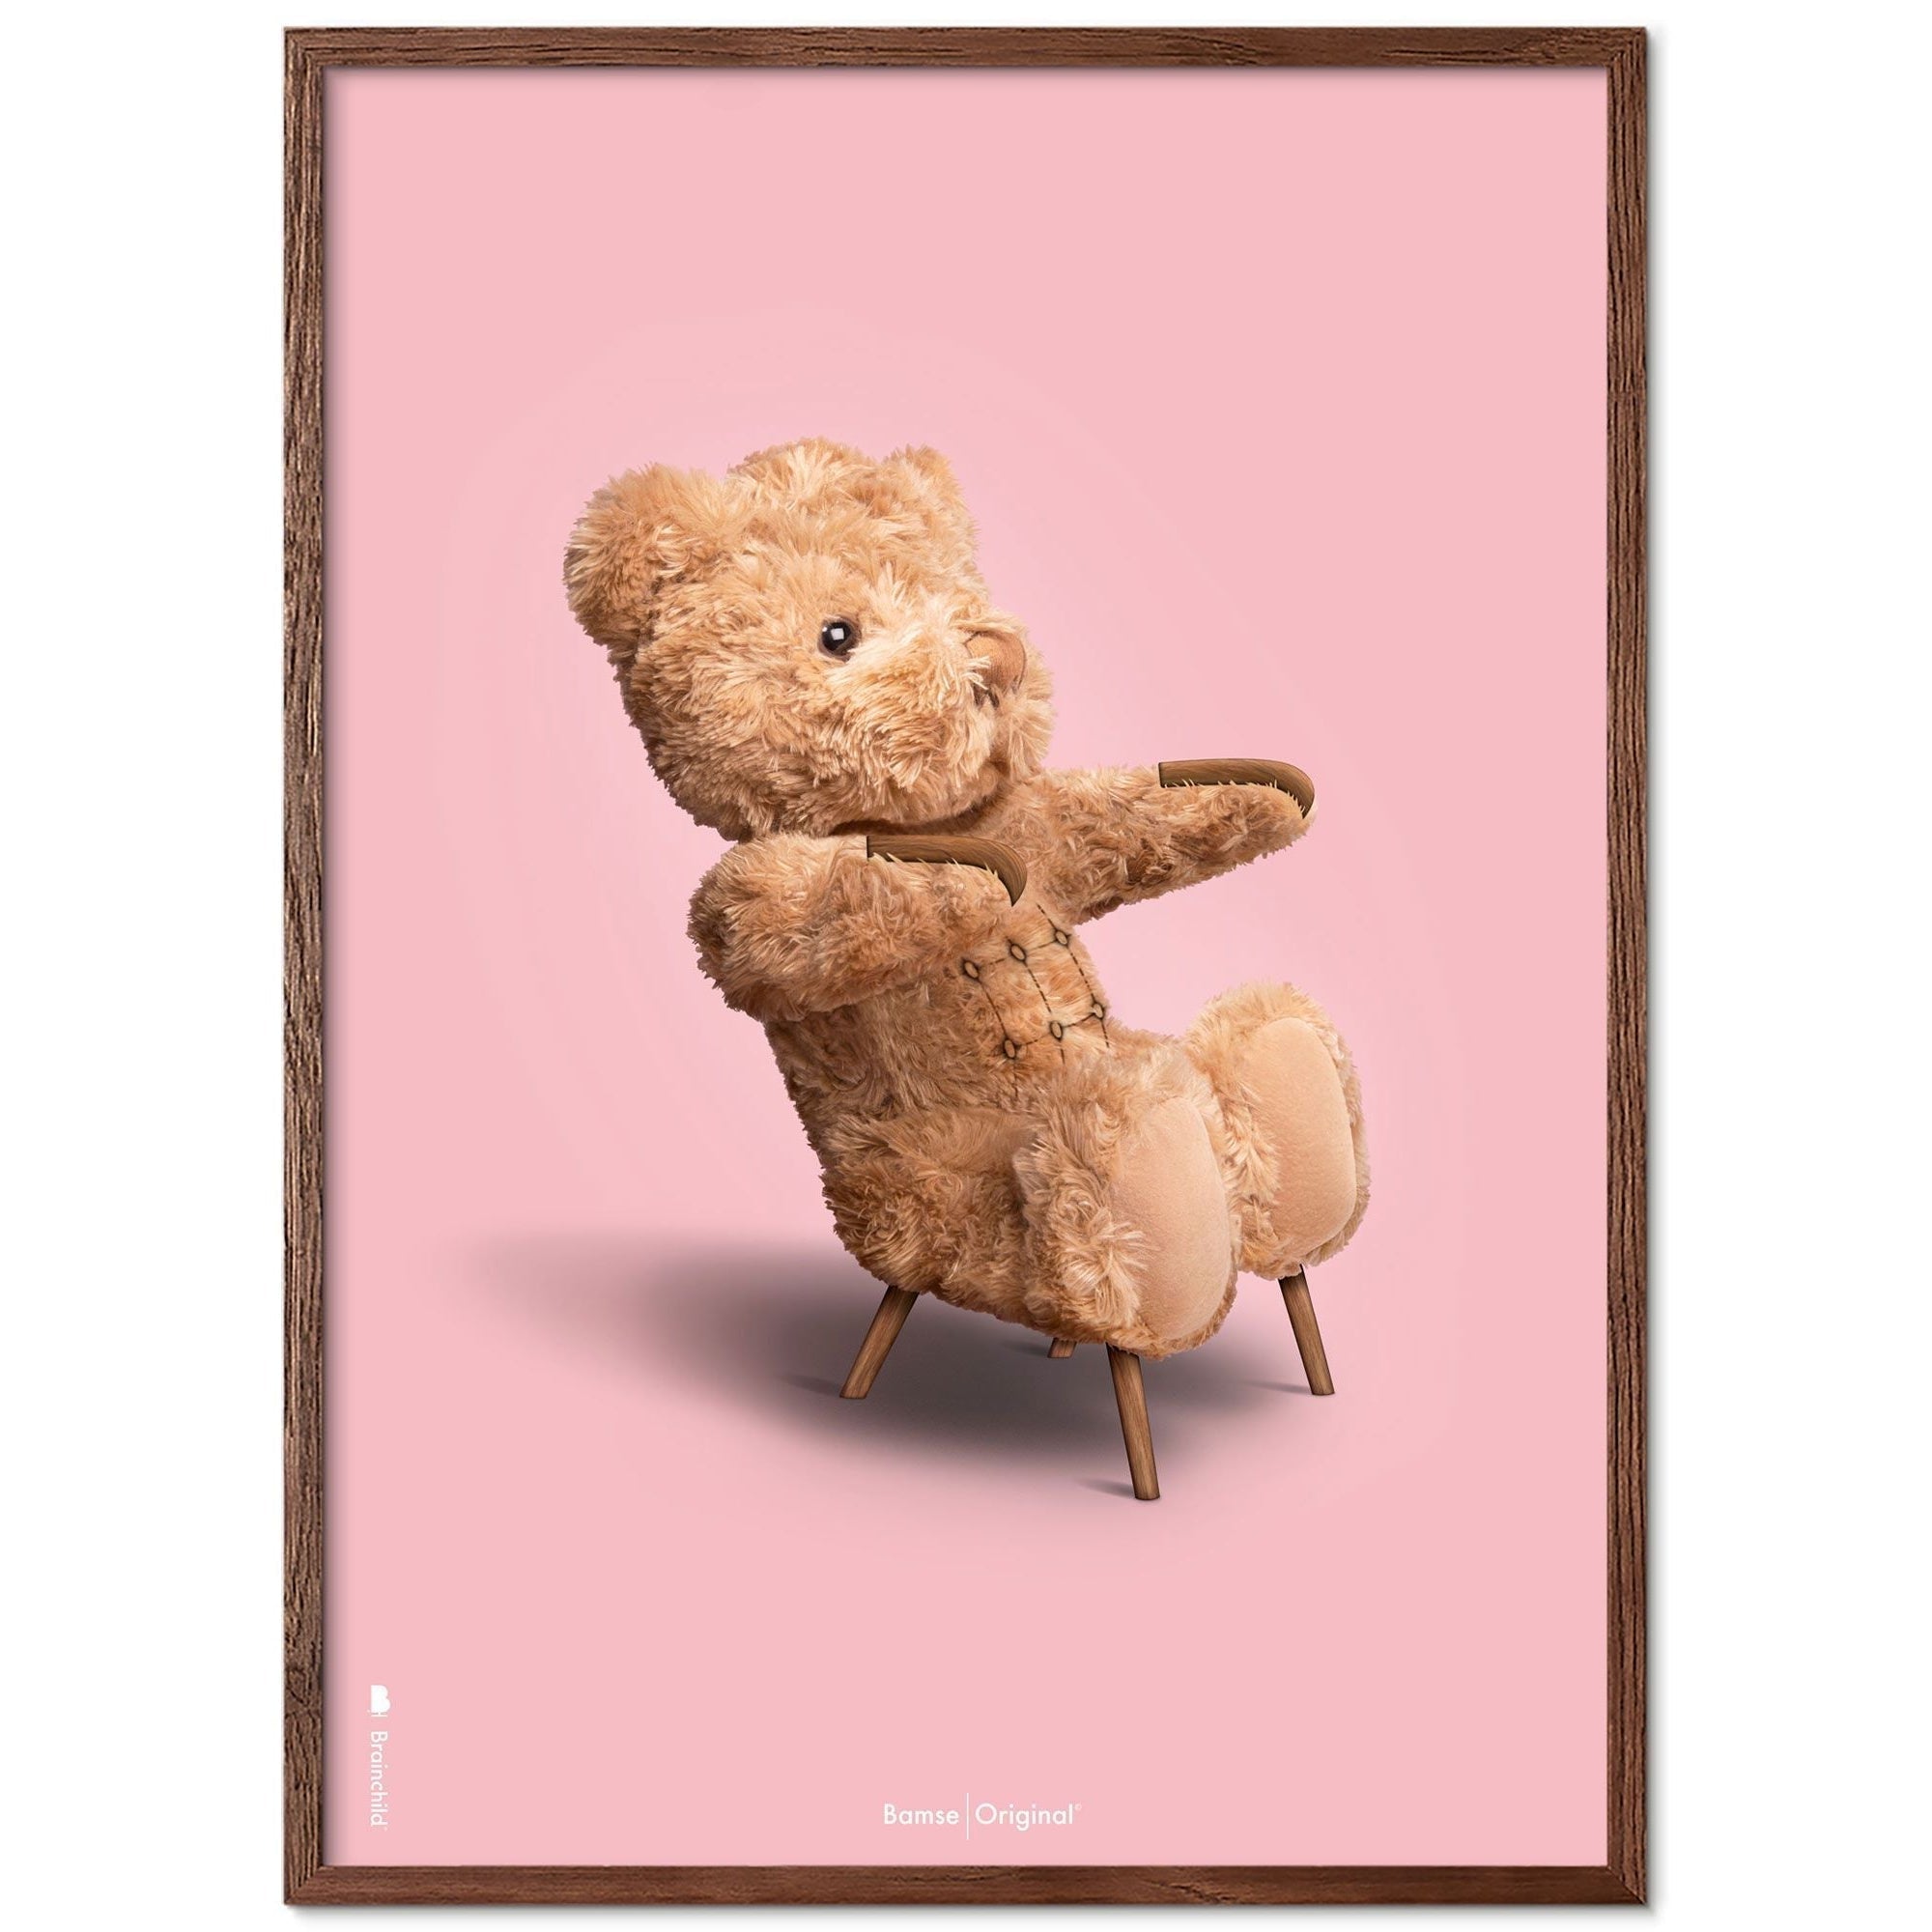 Brainchild Nallebjörn klassisk affischram gjord av mörkt trä ram 70x100 cm, rosa bakgrund